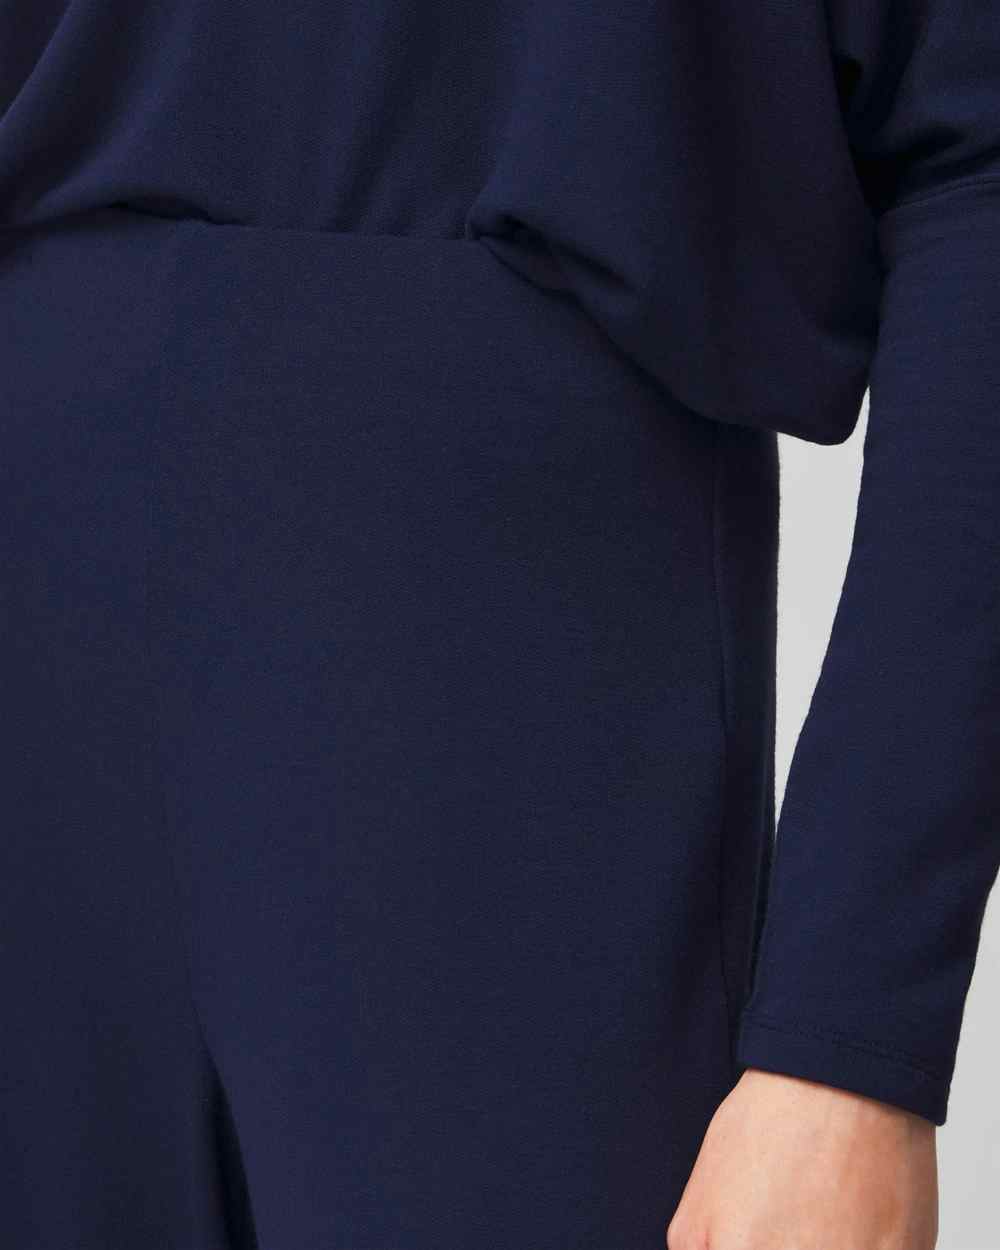 Shop New Arrivals on Women's Pants | White House Black Market